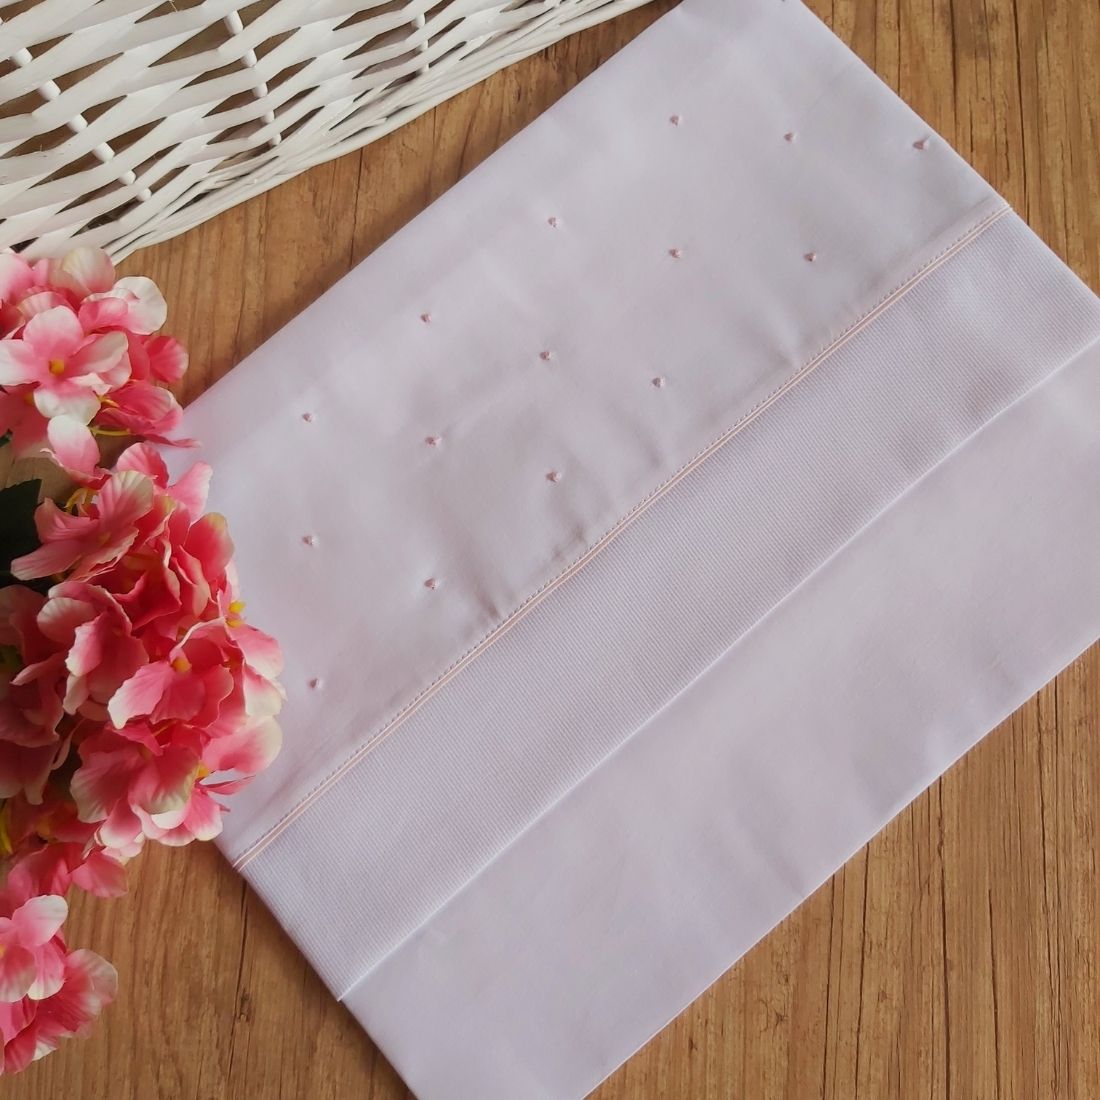 Cueiro lençol de xixi bordado poá rosa